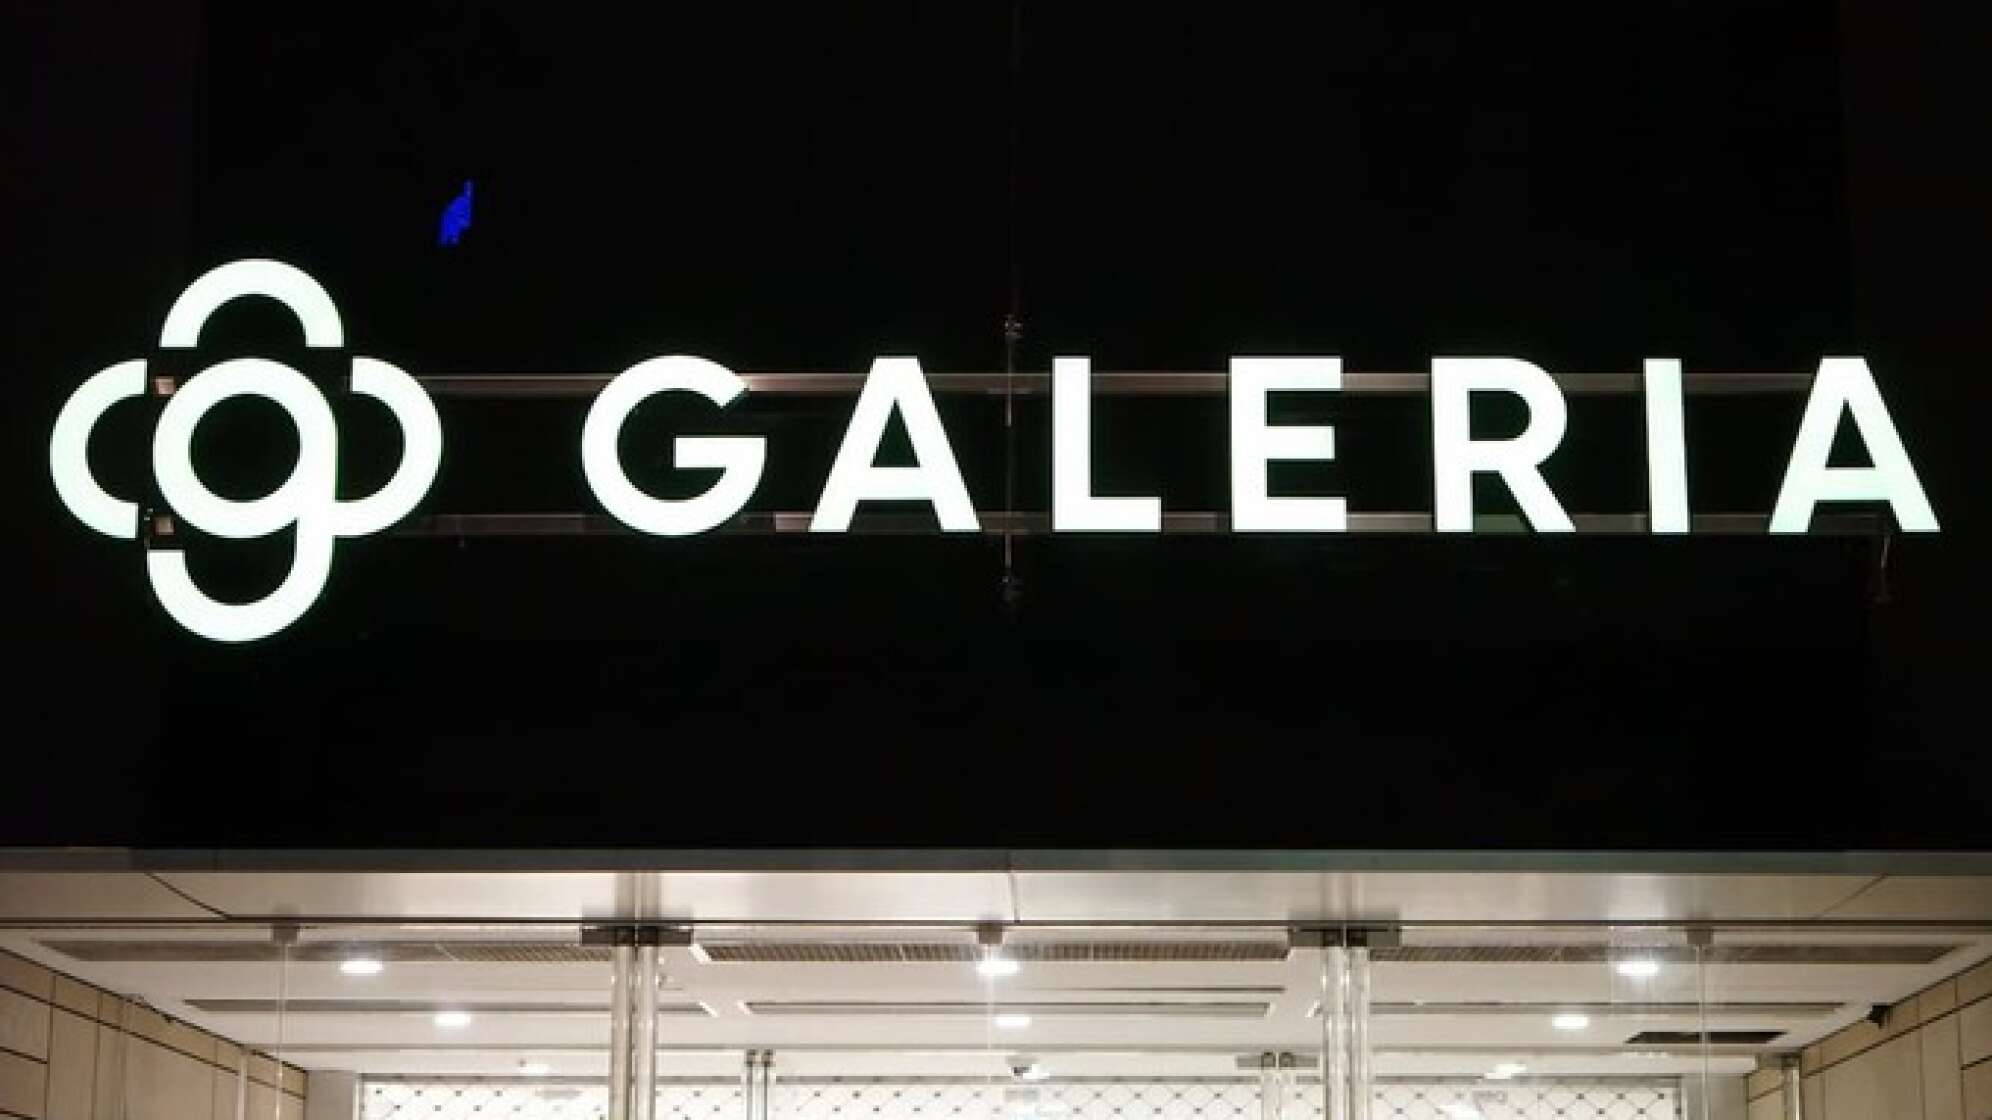 Galeria-Logo